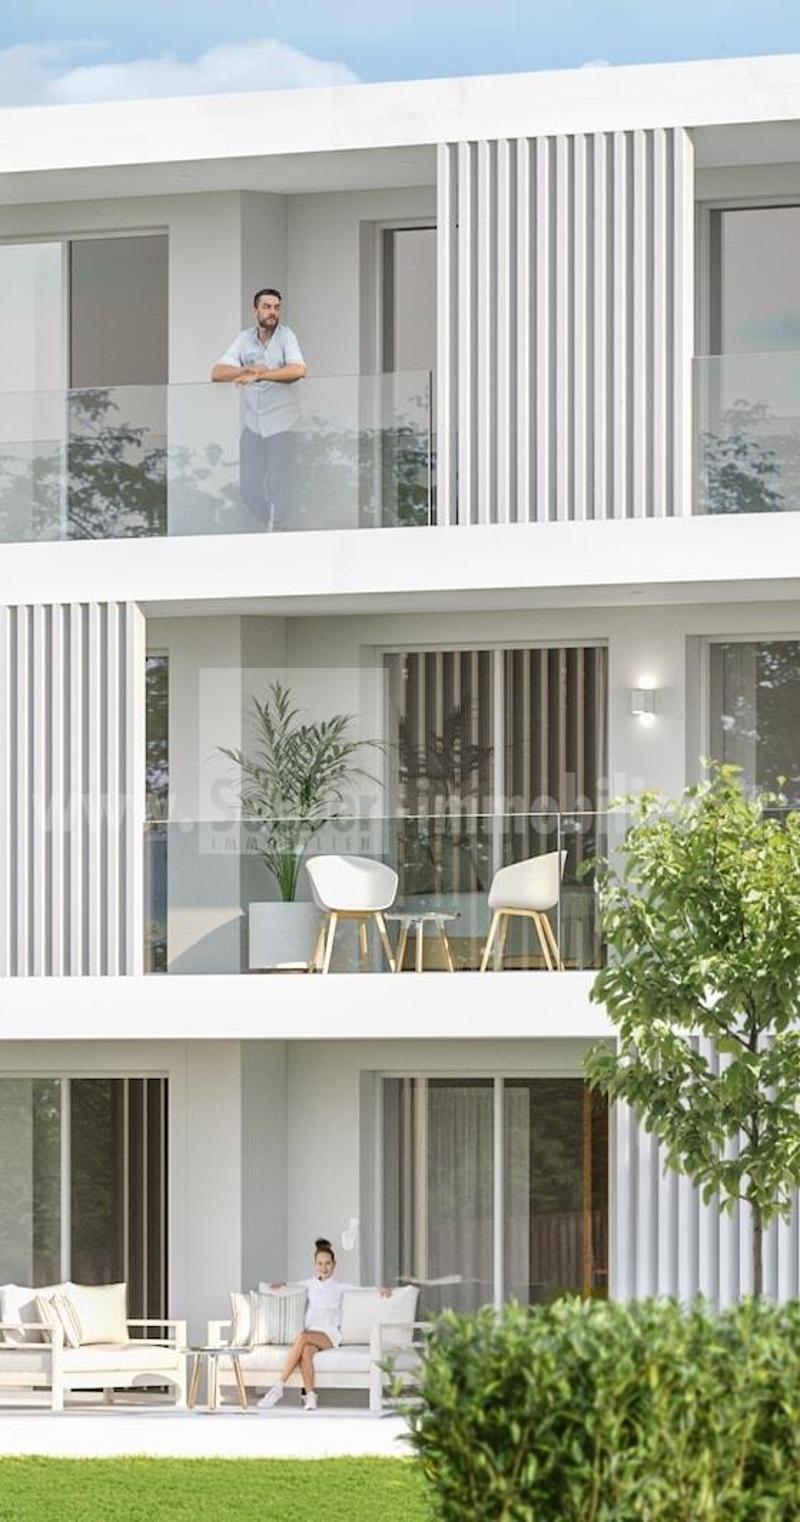 The White Residence: Ihr exklusives Zuhause mit großzügigen Fenstern, modernem Komfort und grüner Oase. Entdecken Sie Ihre Kleine 3-Zimmer-Wohnung im Erdgeschoss – ein Lebensraum voller Freiheit. (1)